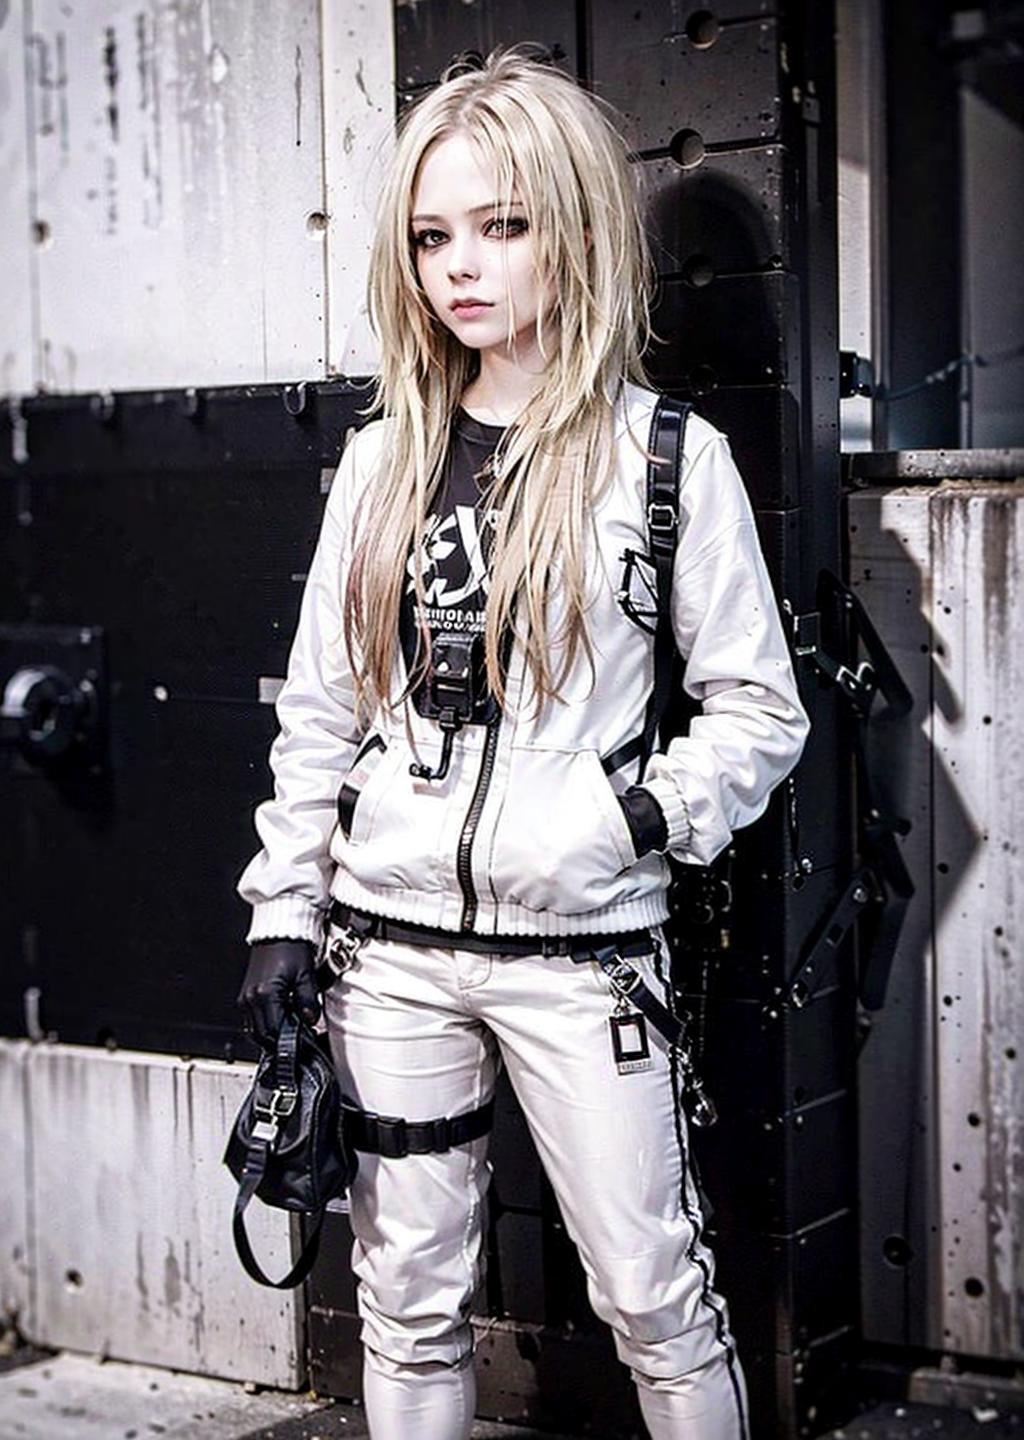 Avril Lavigne LoRA image by wangyongzhi1984